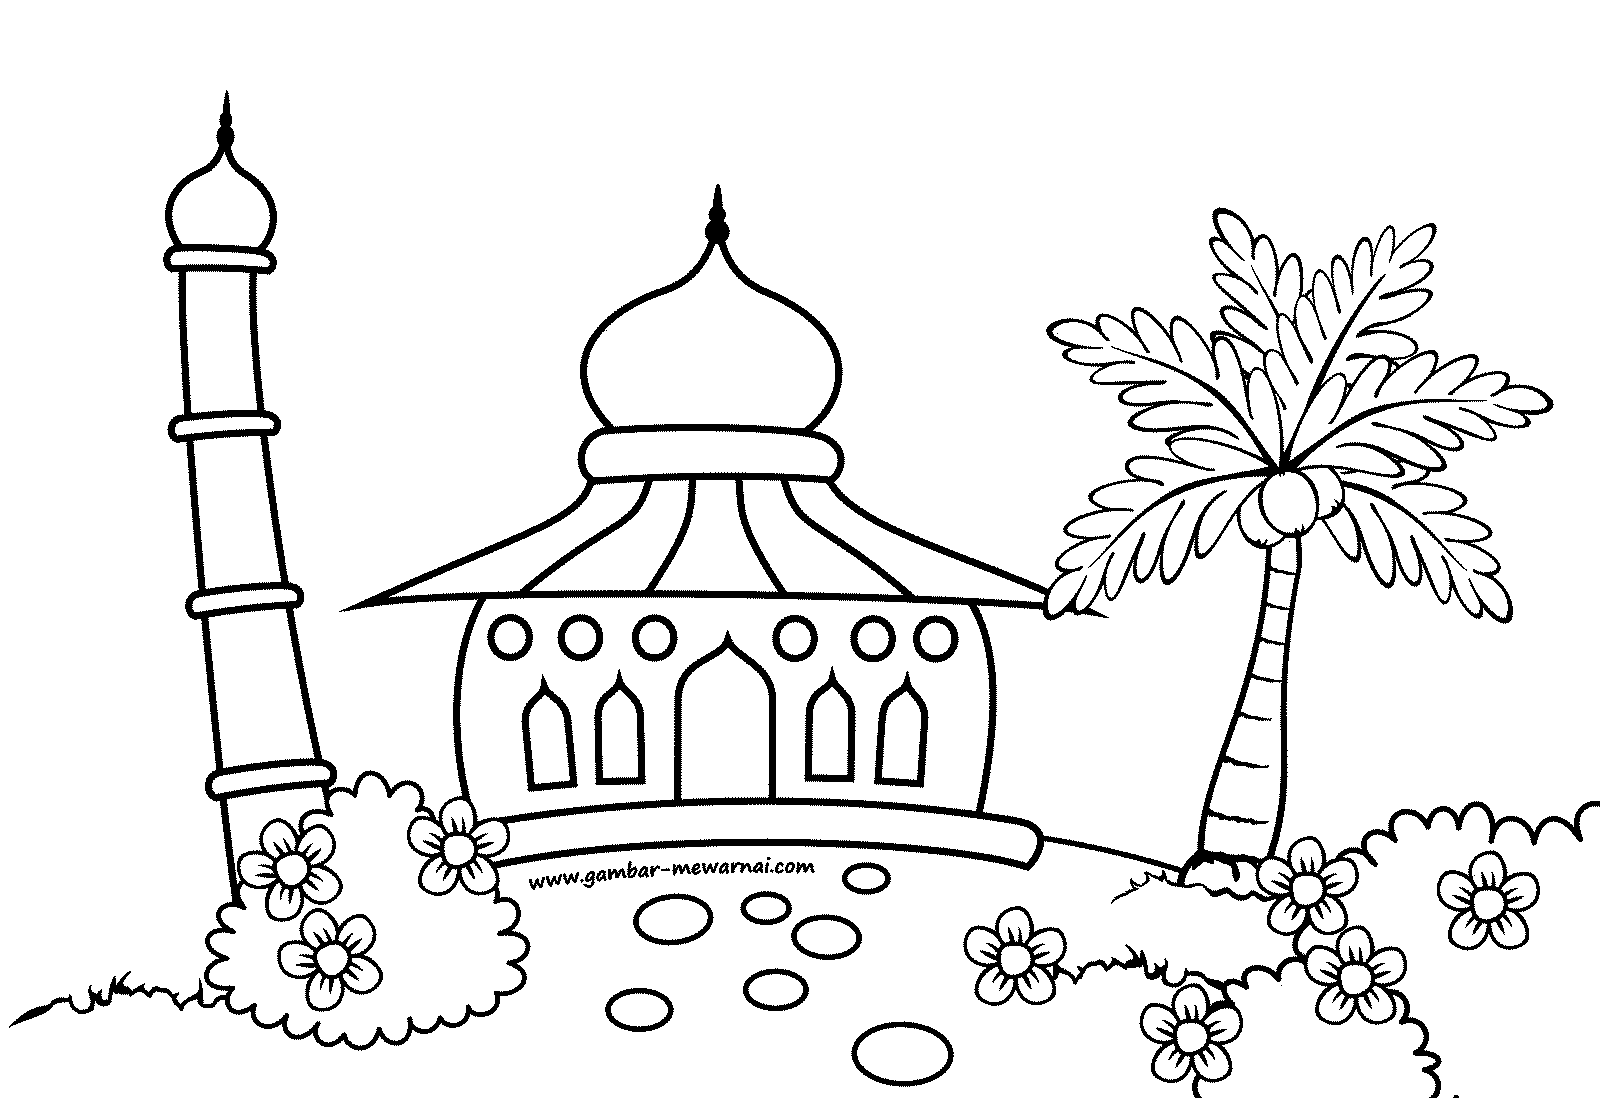 Mewarnai Gambar Masjid - Contoh Gambar Mewarnai